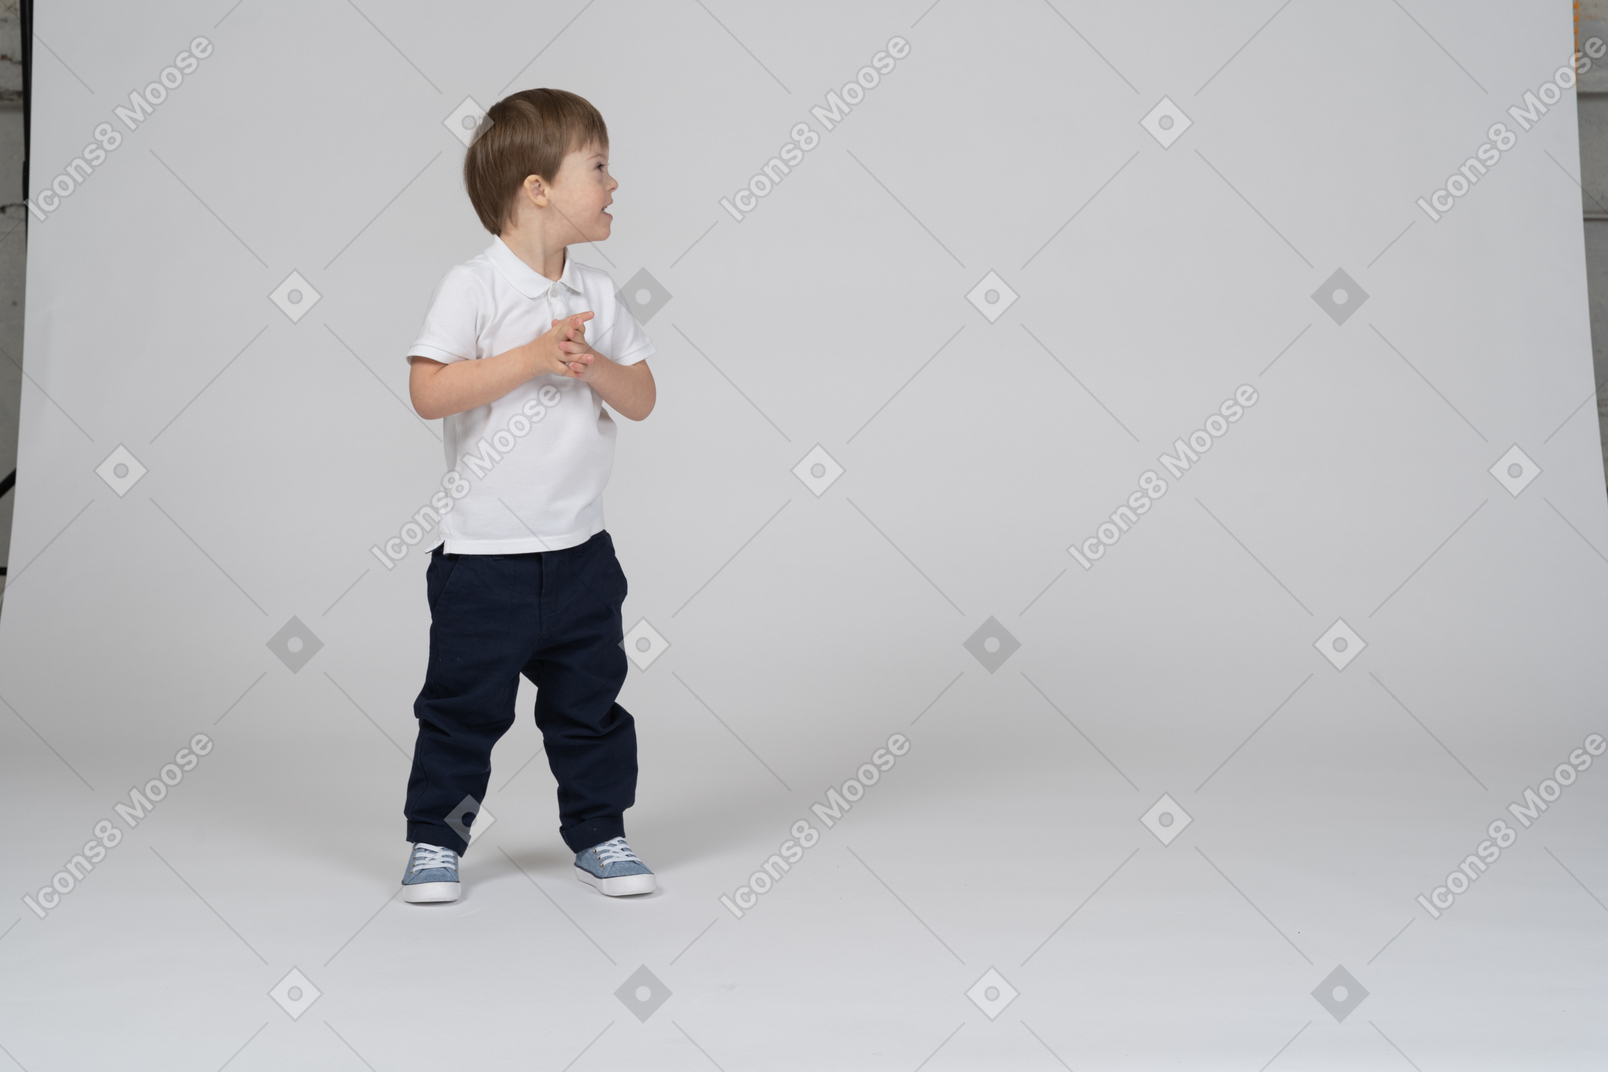 A boy standing in front of an open door